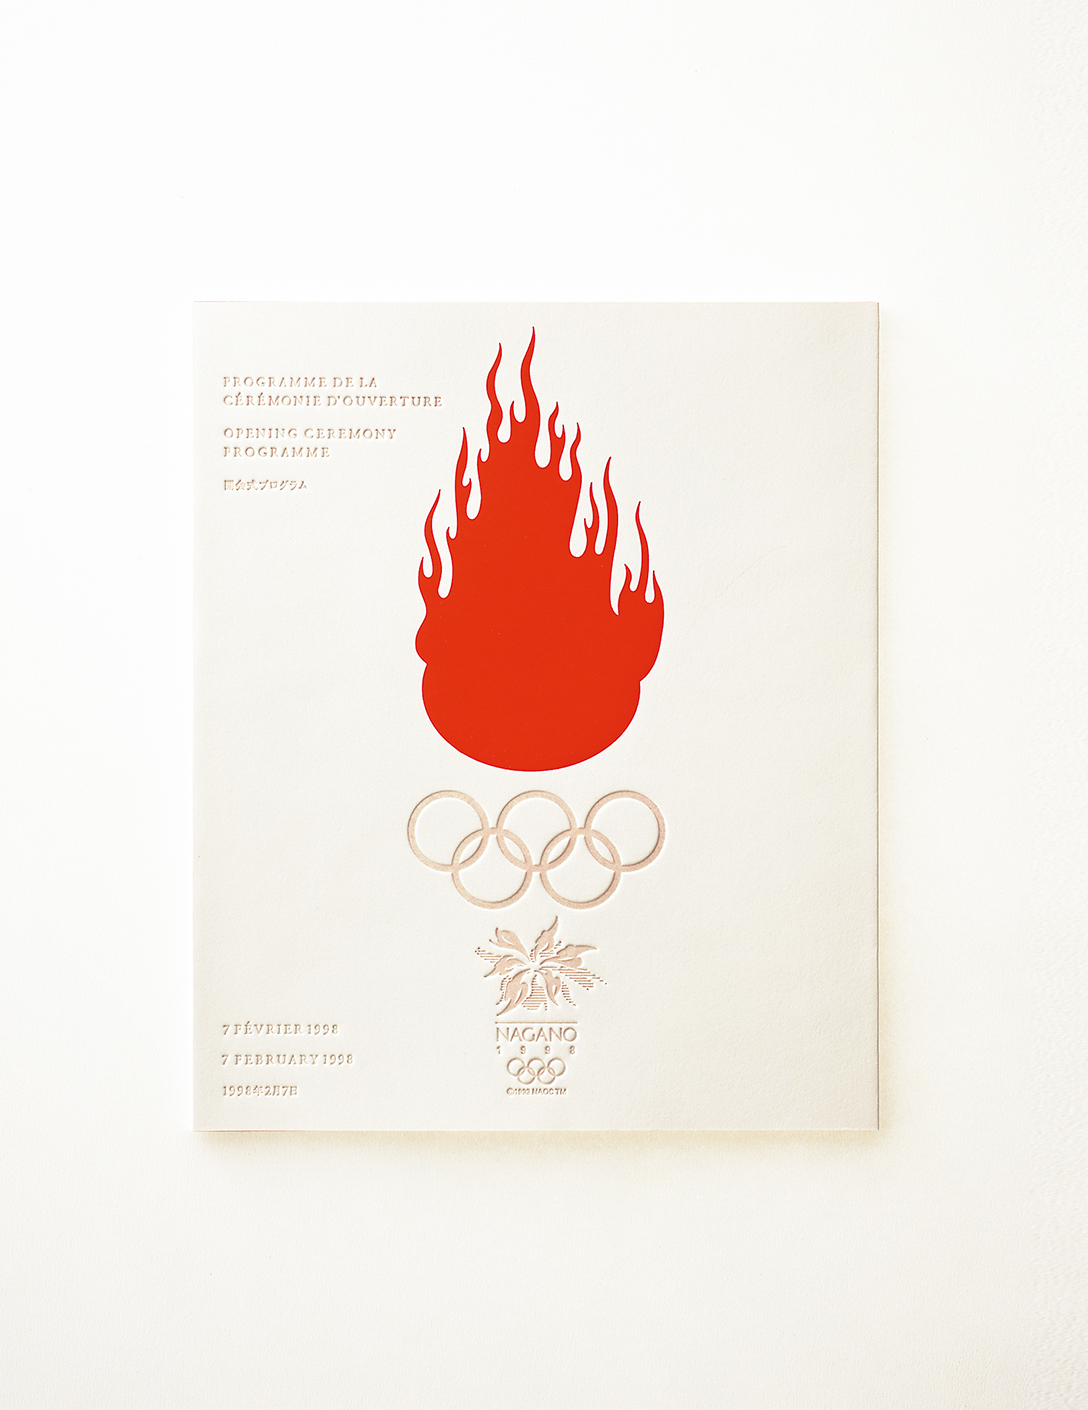 長野冬季オリンピック 開・閉会式プログラムデザイン